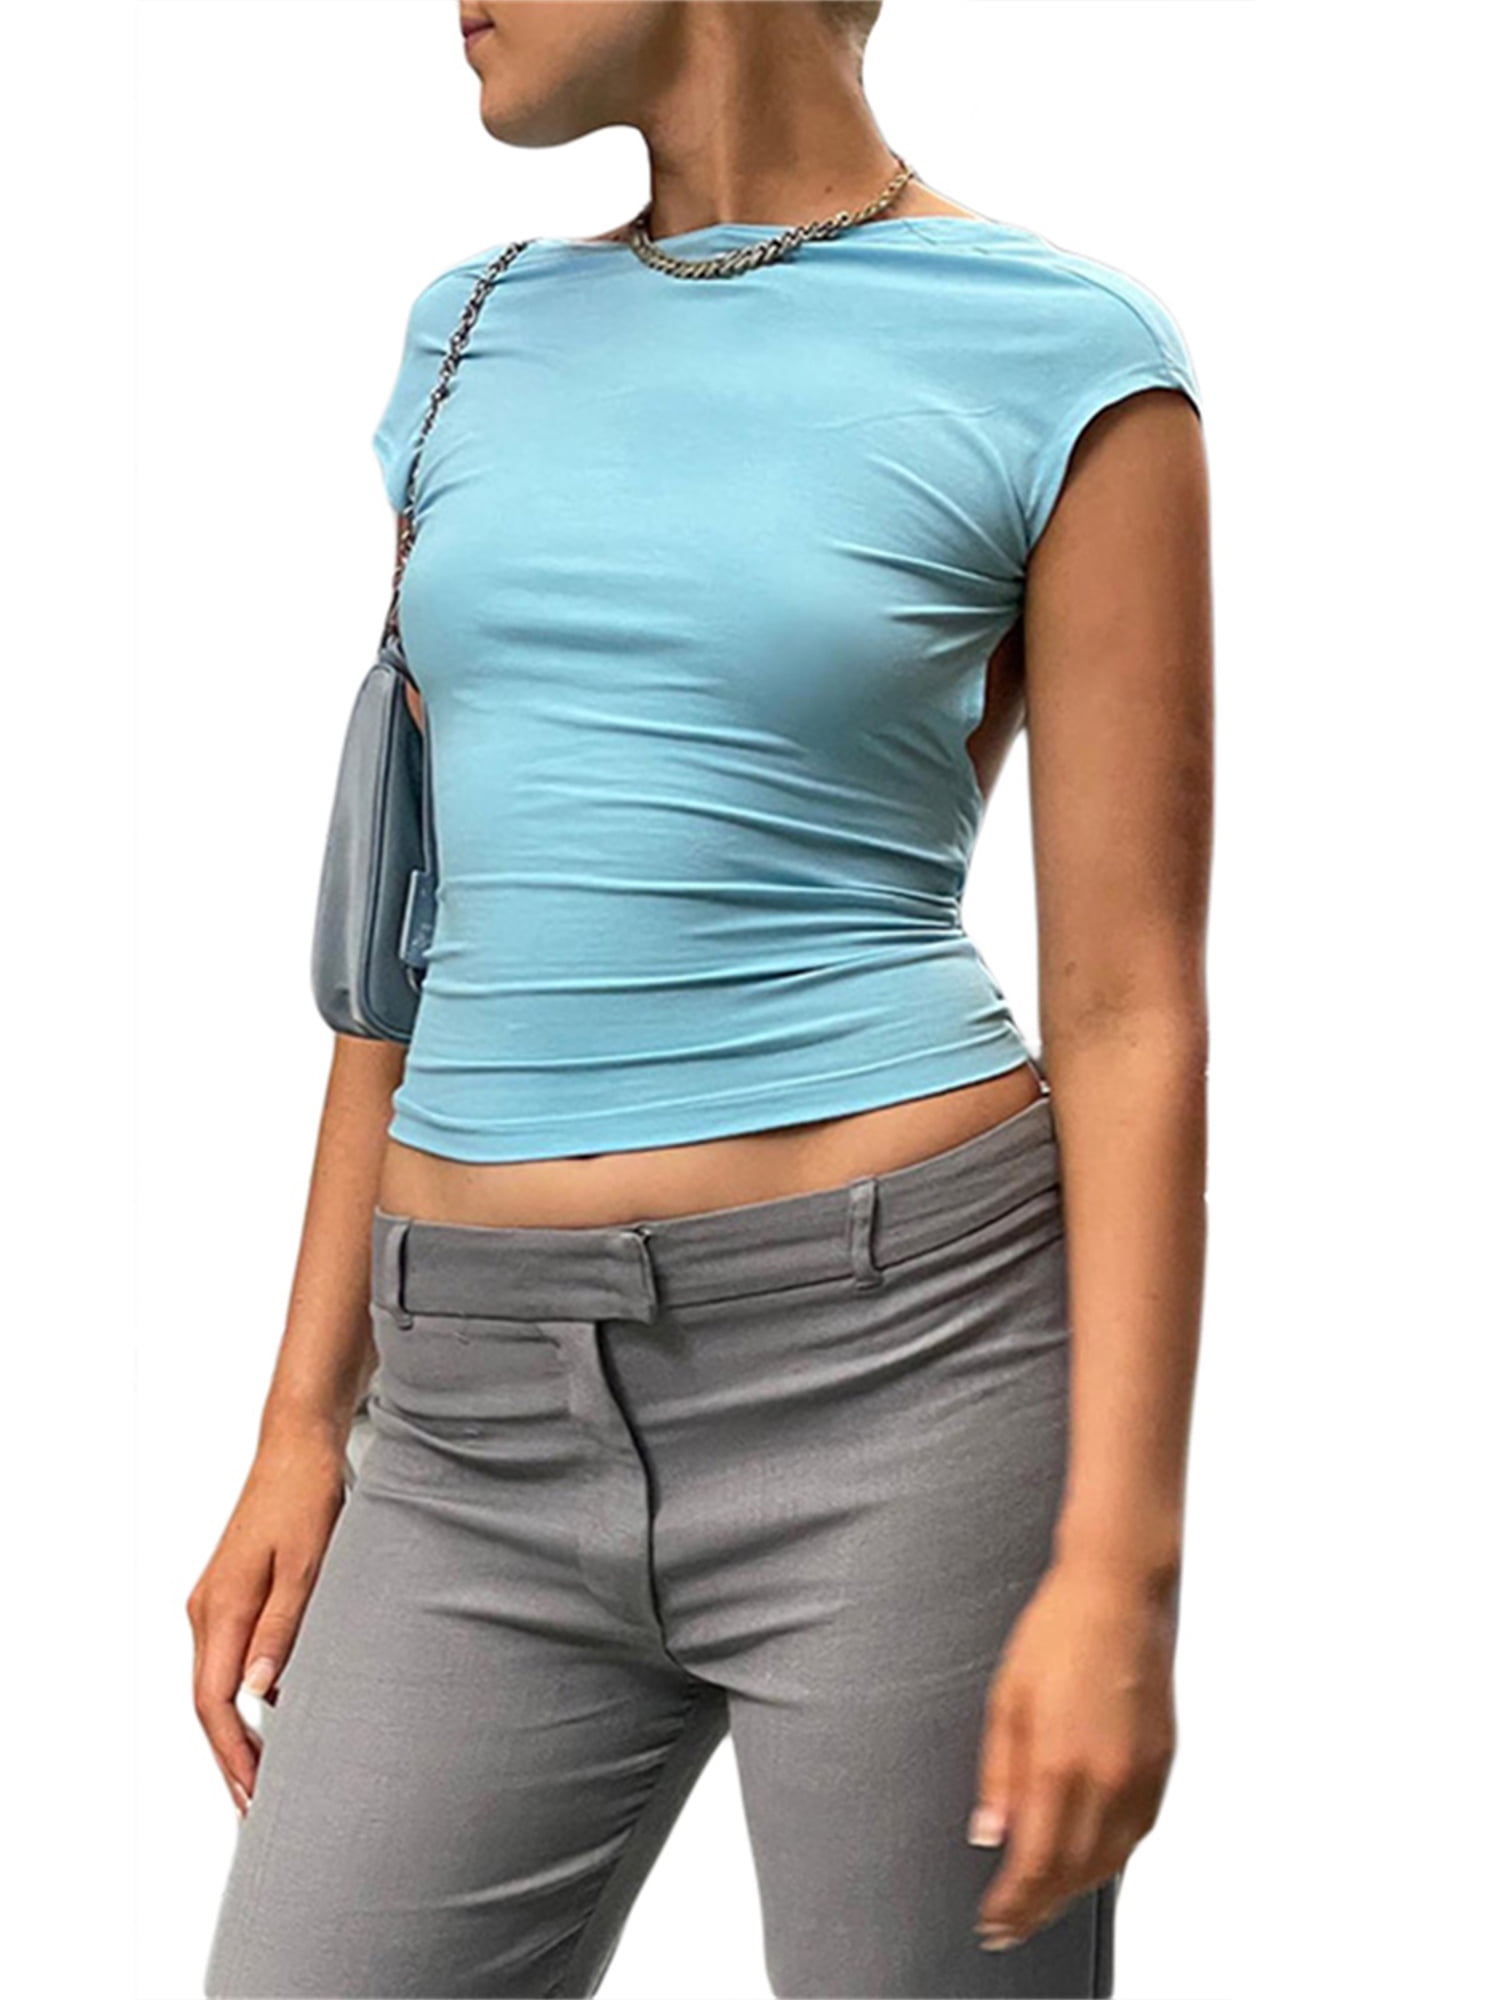 Short Sleeve Backless Tops Women Multi Ways Wear Crop Top –